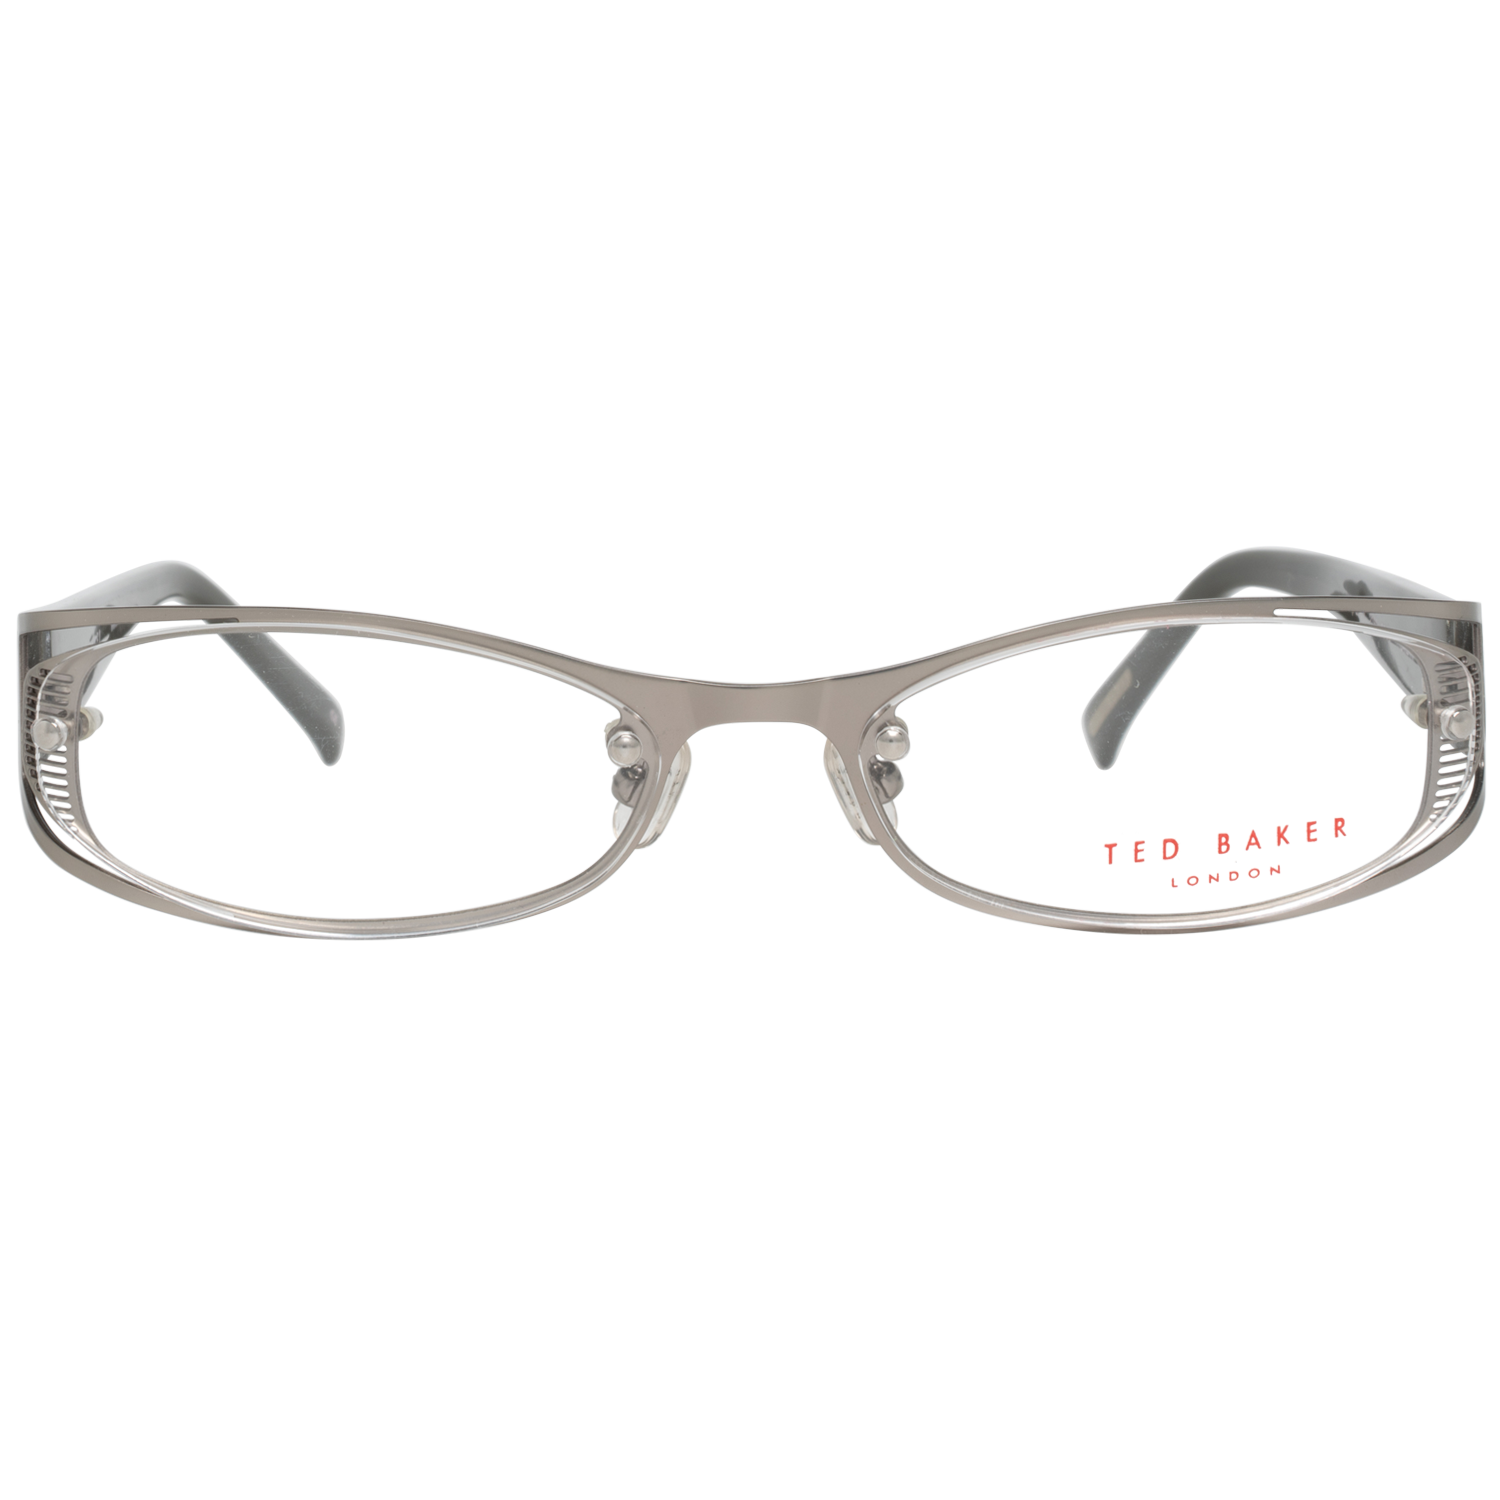 Ted Baker Frames Ted Baker Optical Frame Prescription Glasses TB2160 869 54 Eyeglasses Eyewear UK USA Australia 